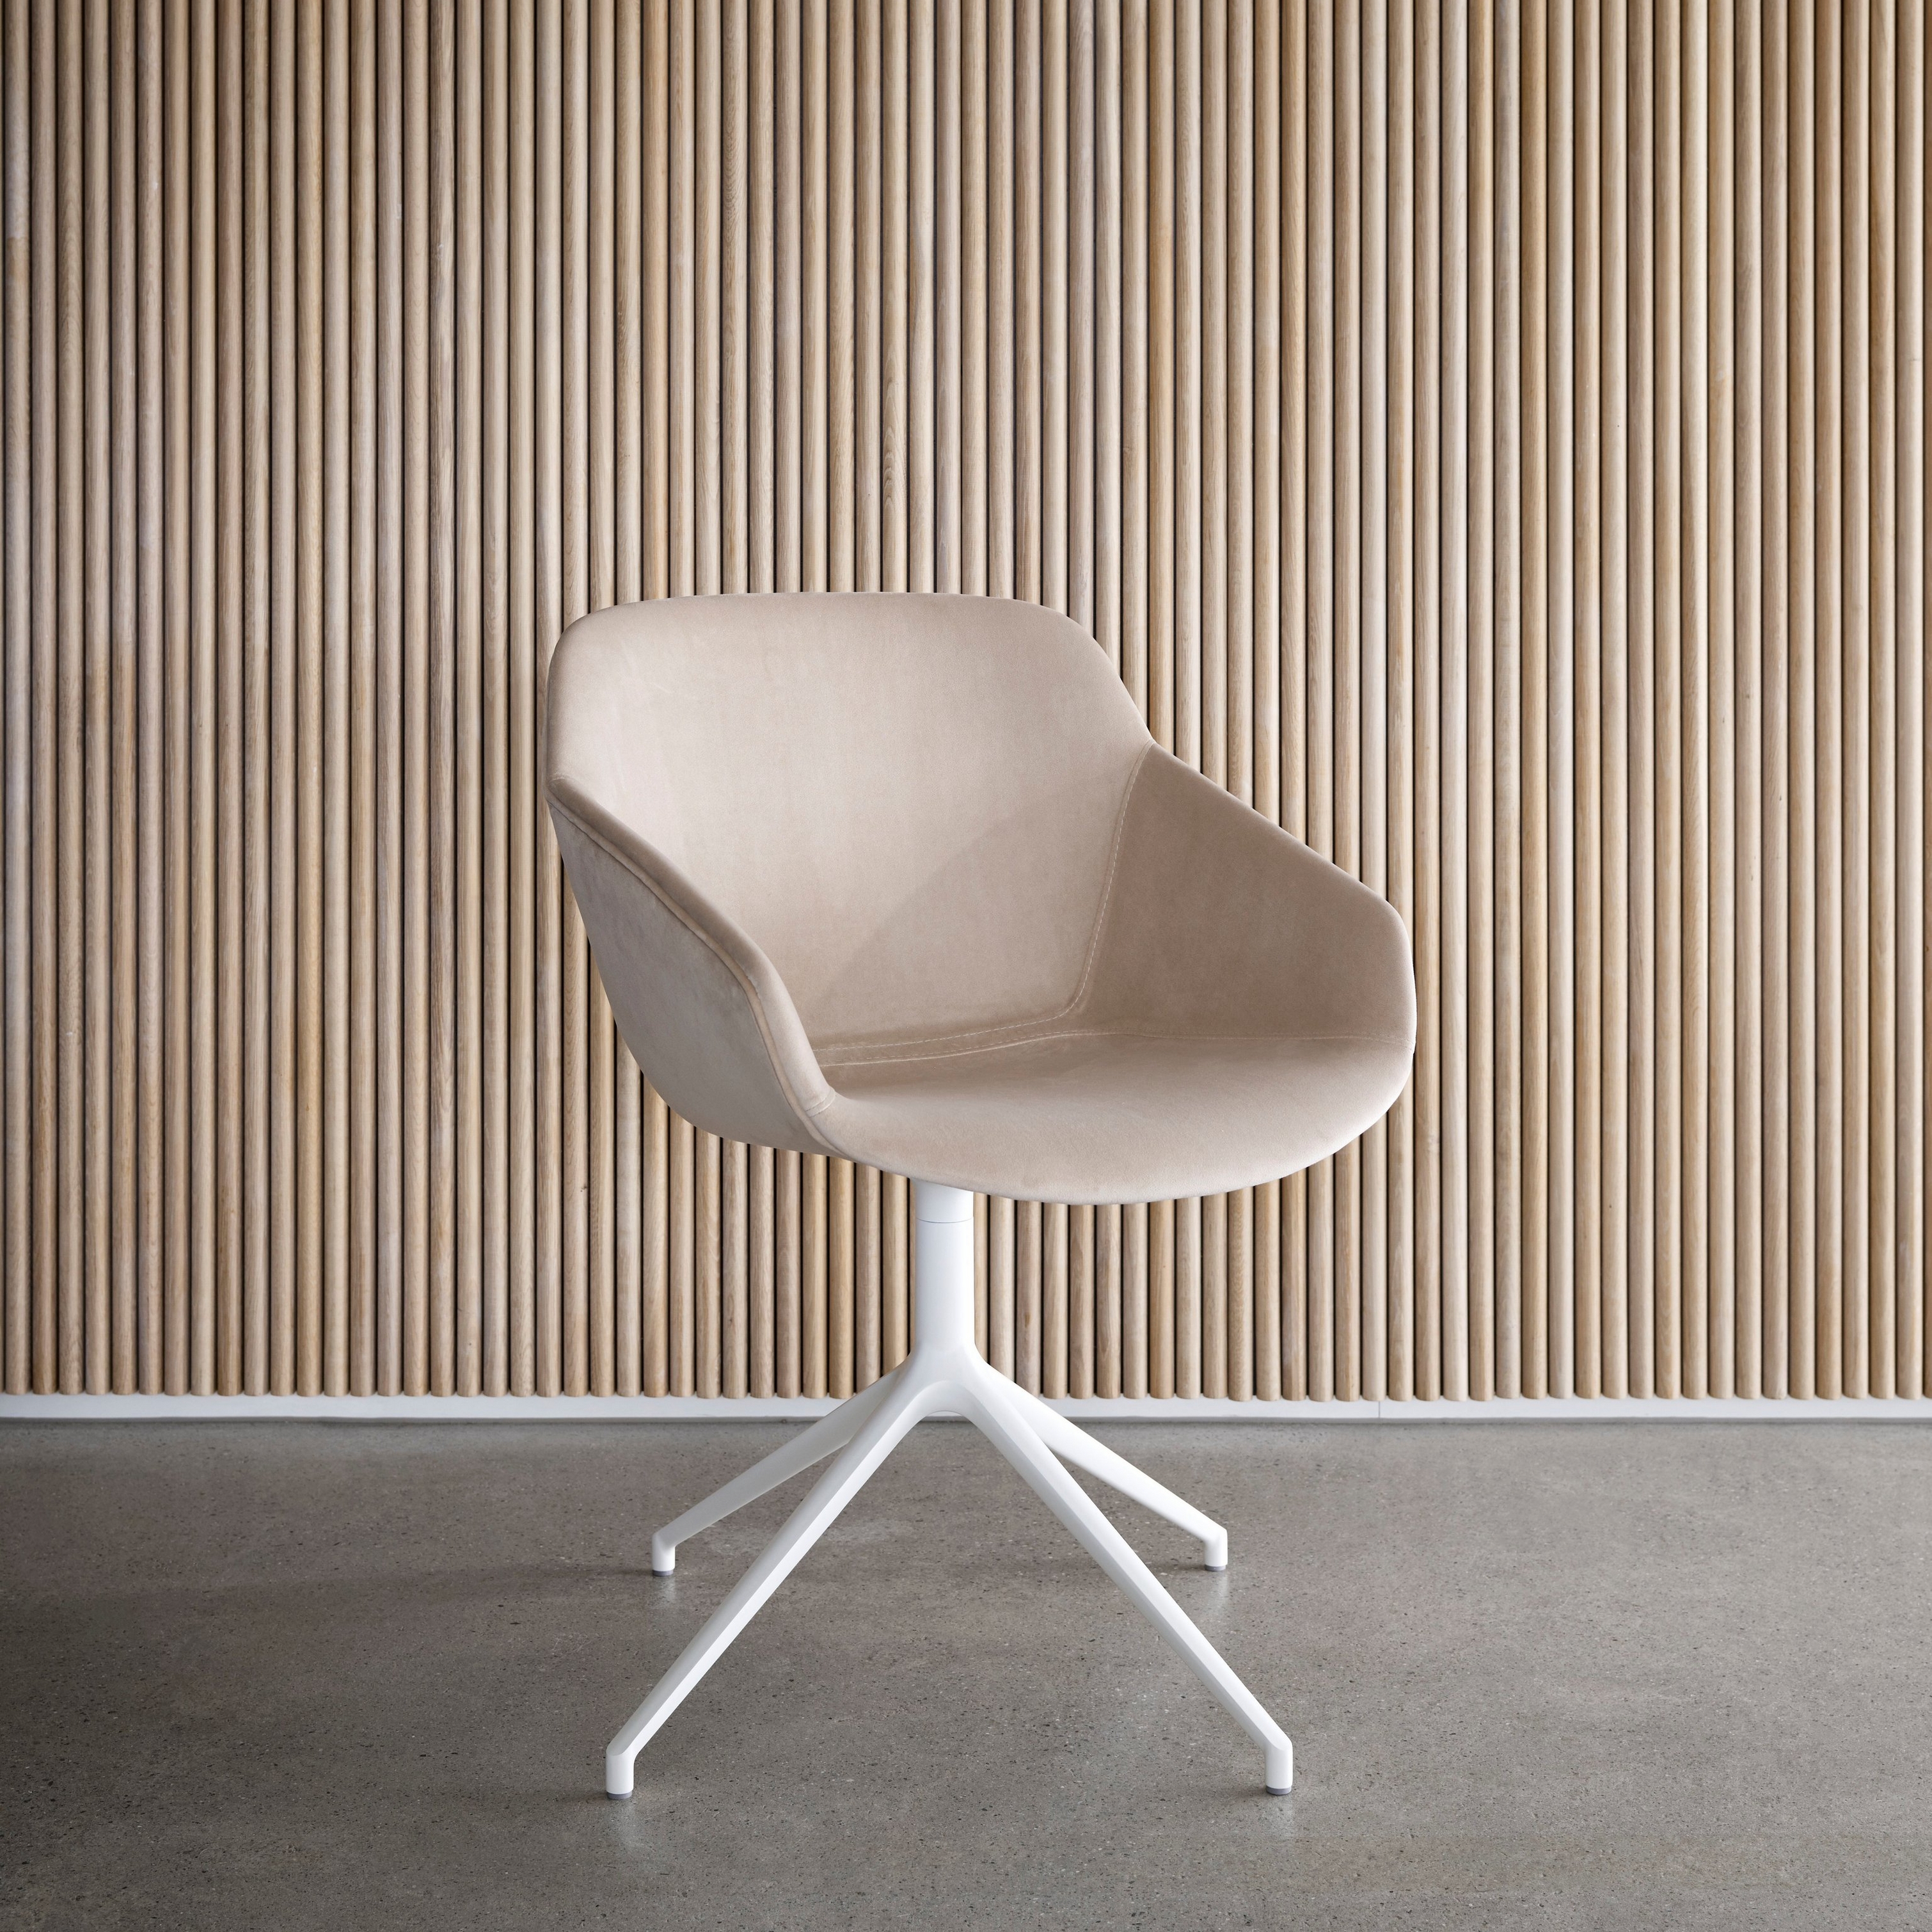 Beiger Stuhl mit weißem Untergestell an einer Wand mit vertikalen Holzlatten.